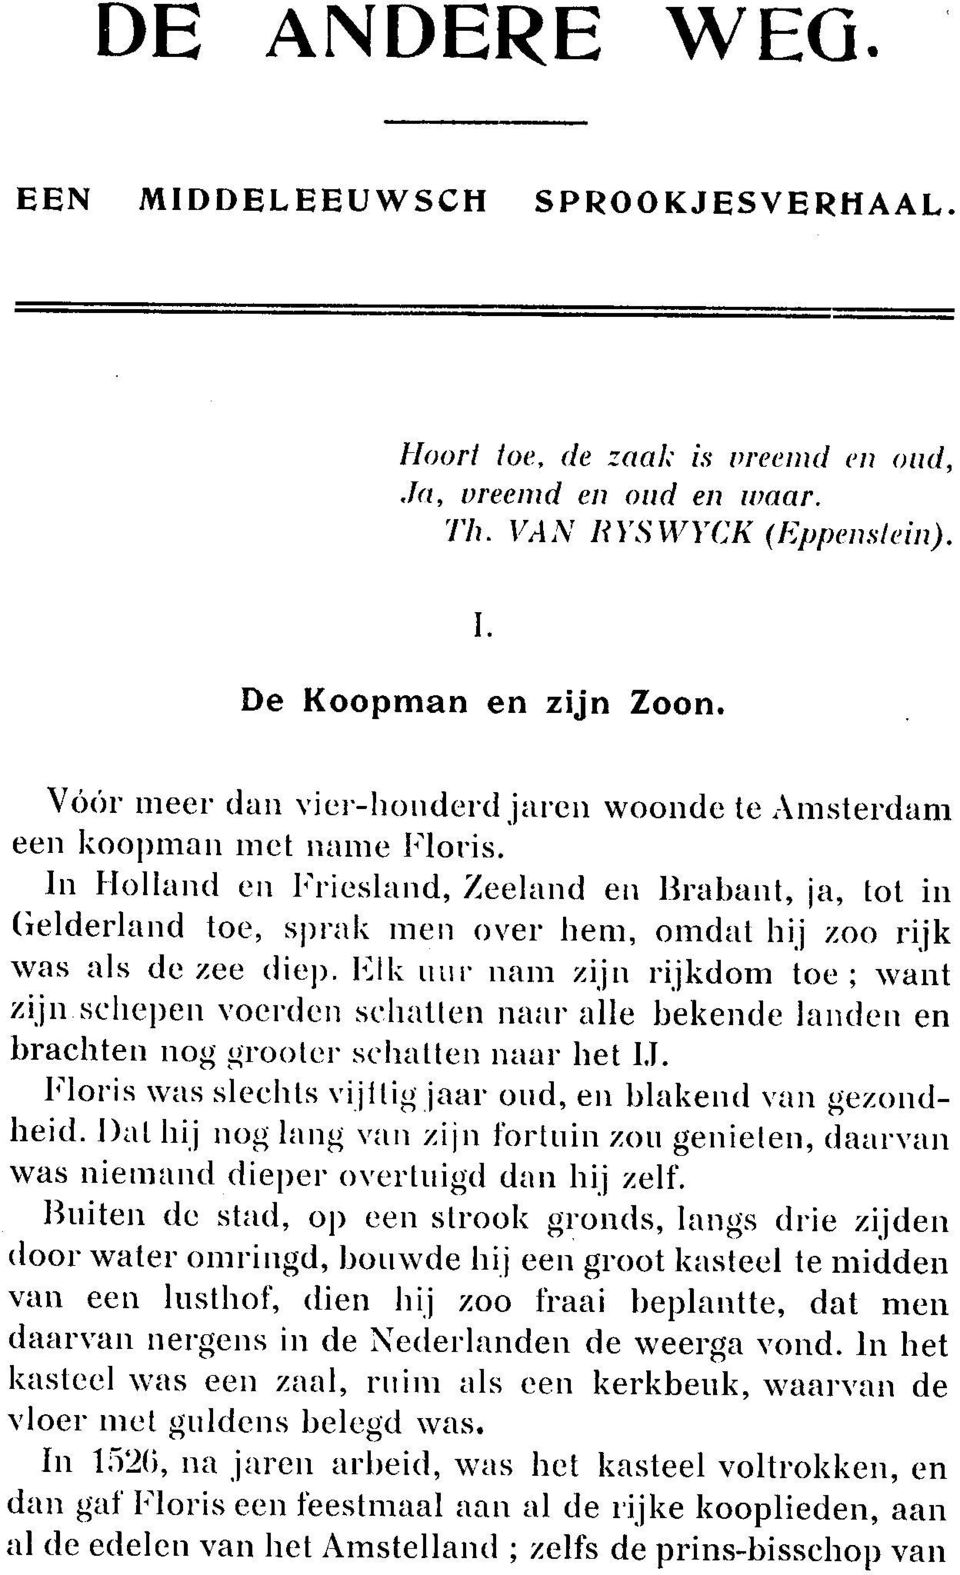 In Holland en Friesland, Zeeland en Brabant, ja, tot in Gelderland toe, sl)rak men over hem, omdat hij zoo rijk was als de zee diep.